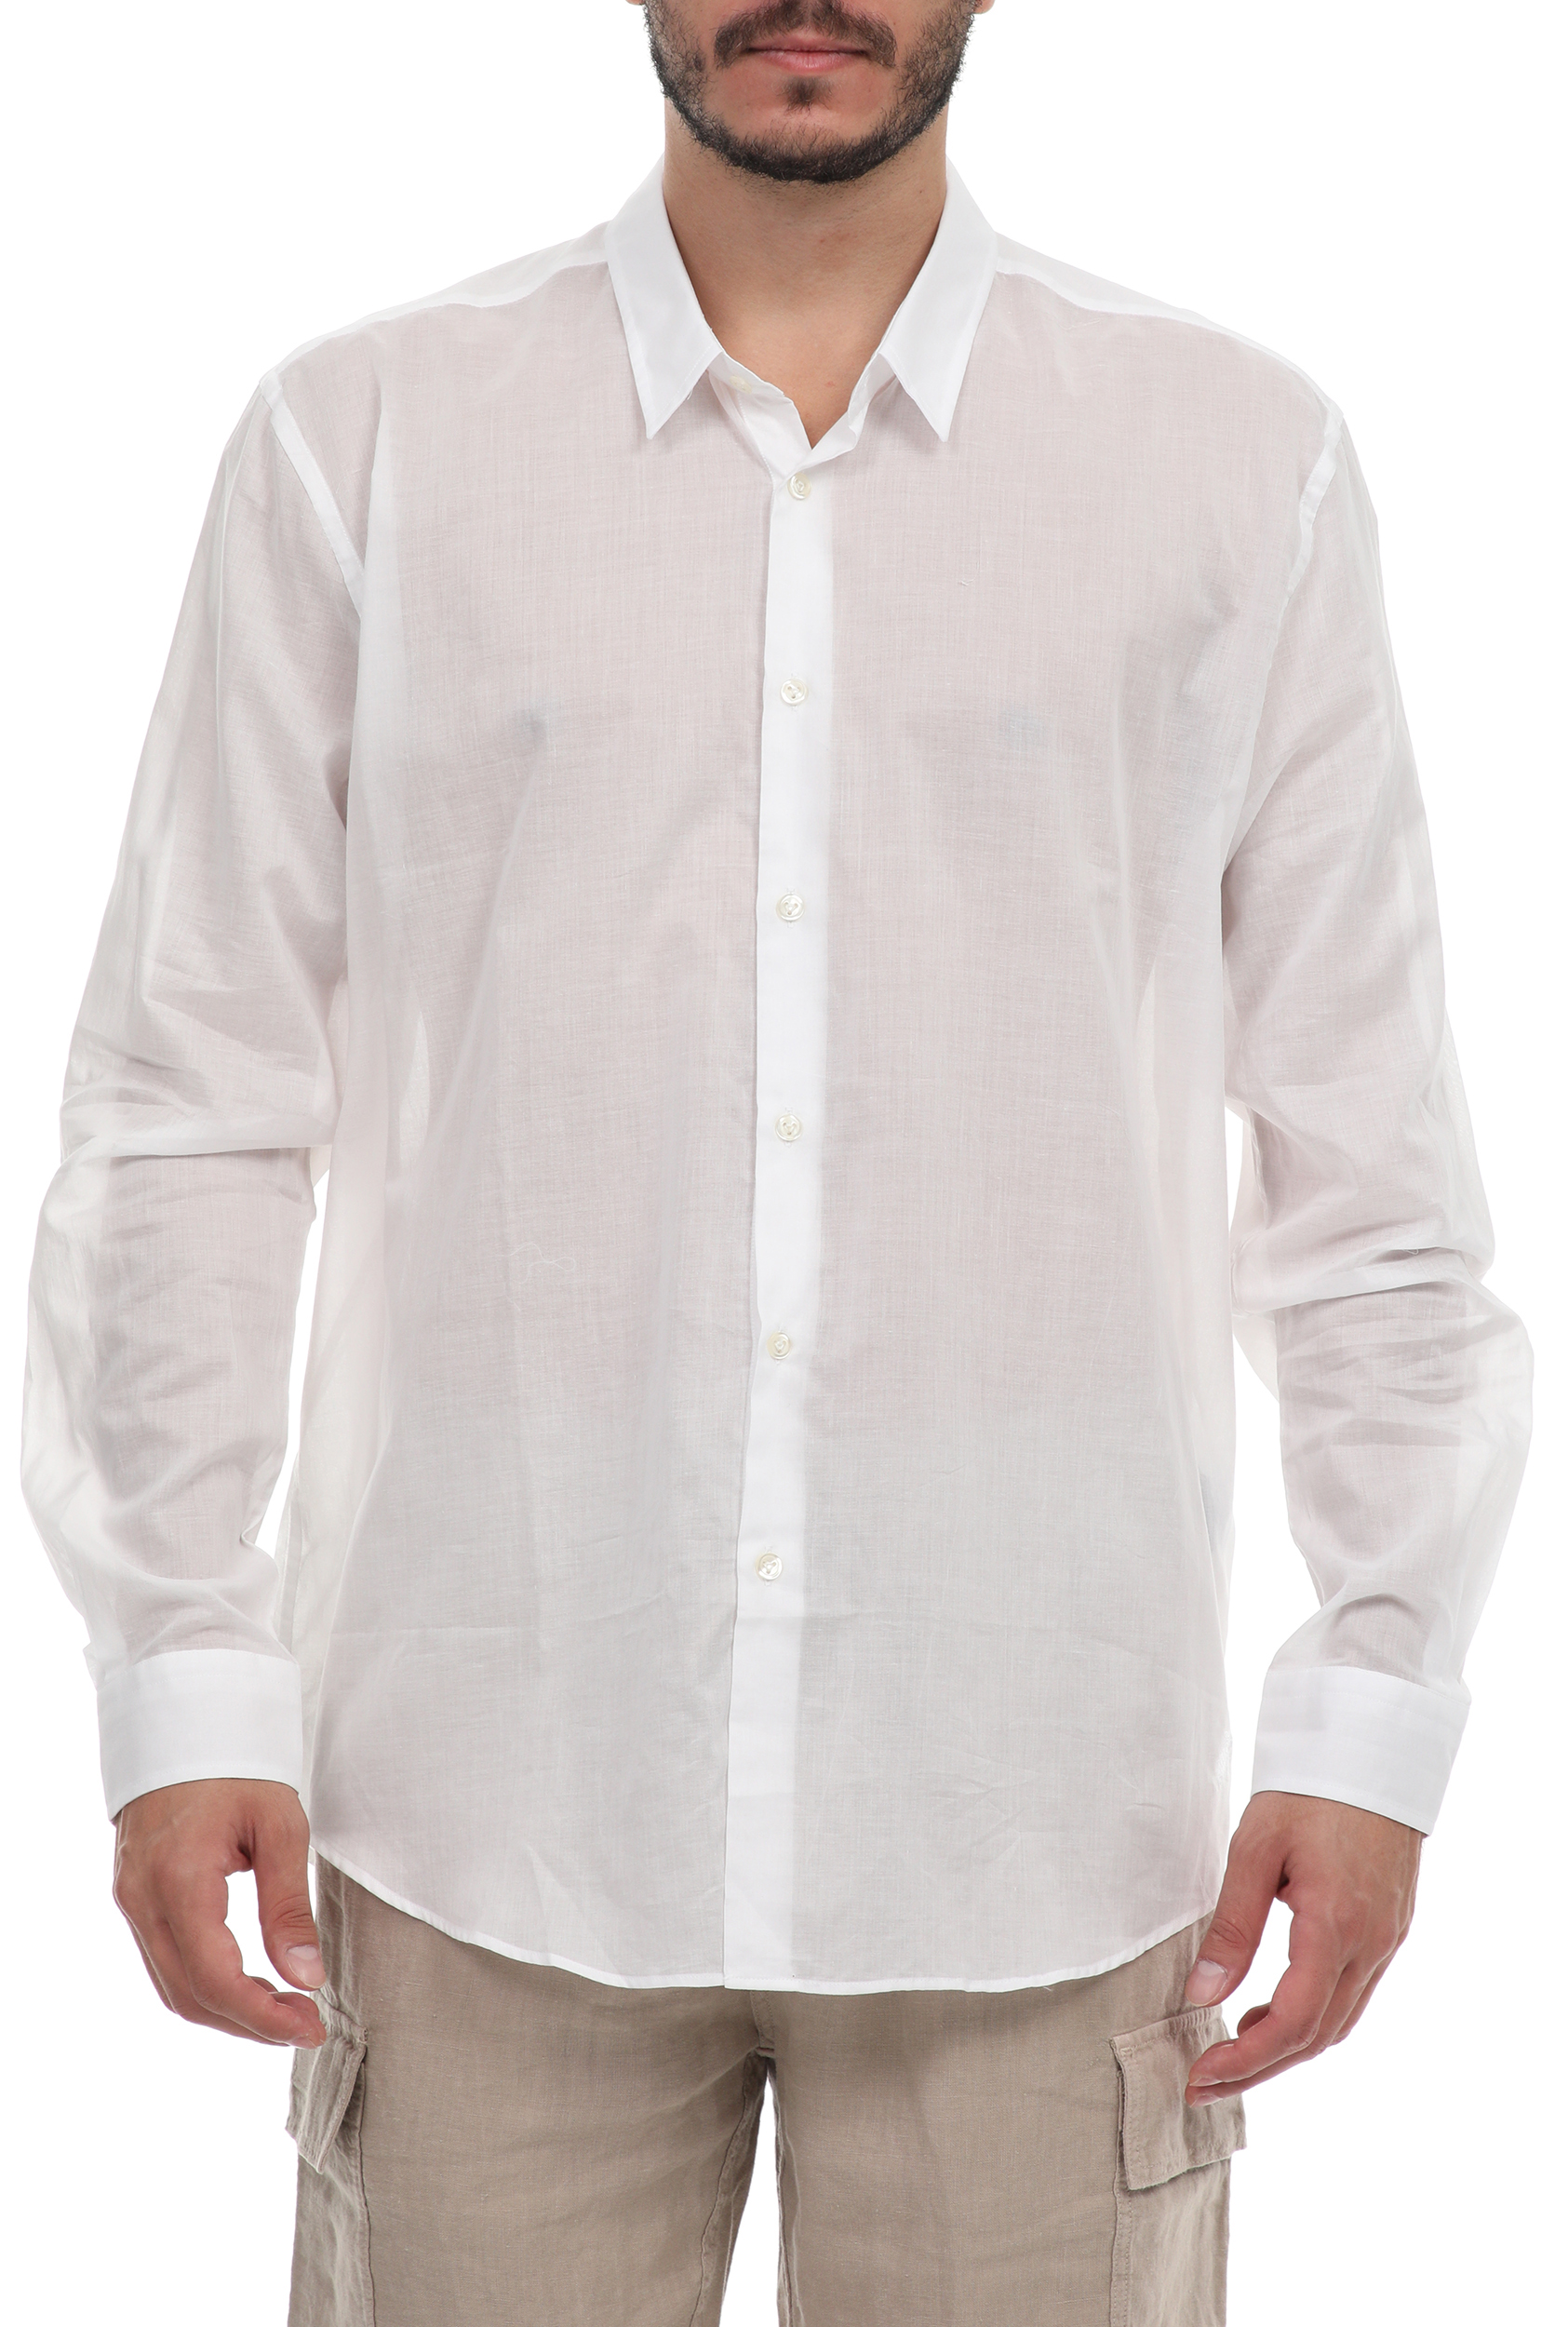 Ανδρικά/Ρούχα/Πουκάμισα/Μακρυμάνικα VILEBREQUIN - Ανδρικό πουκάμισο VILEBREQUIN CARACAL λευκό